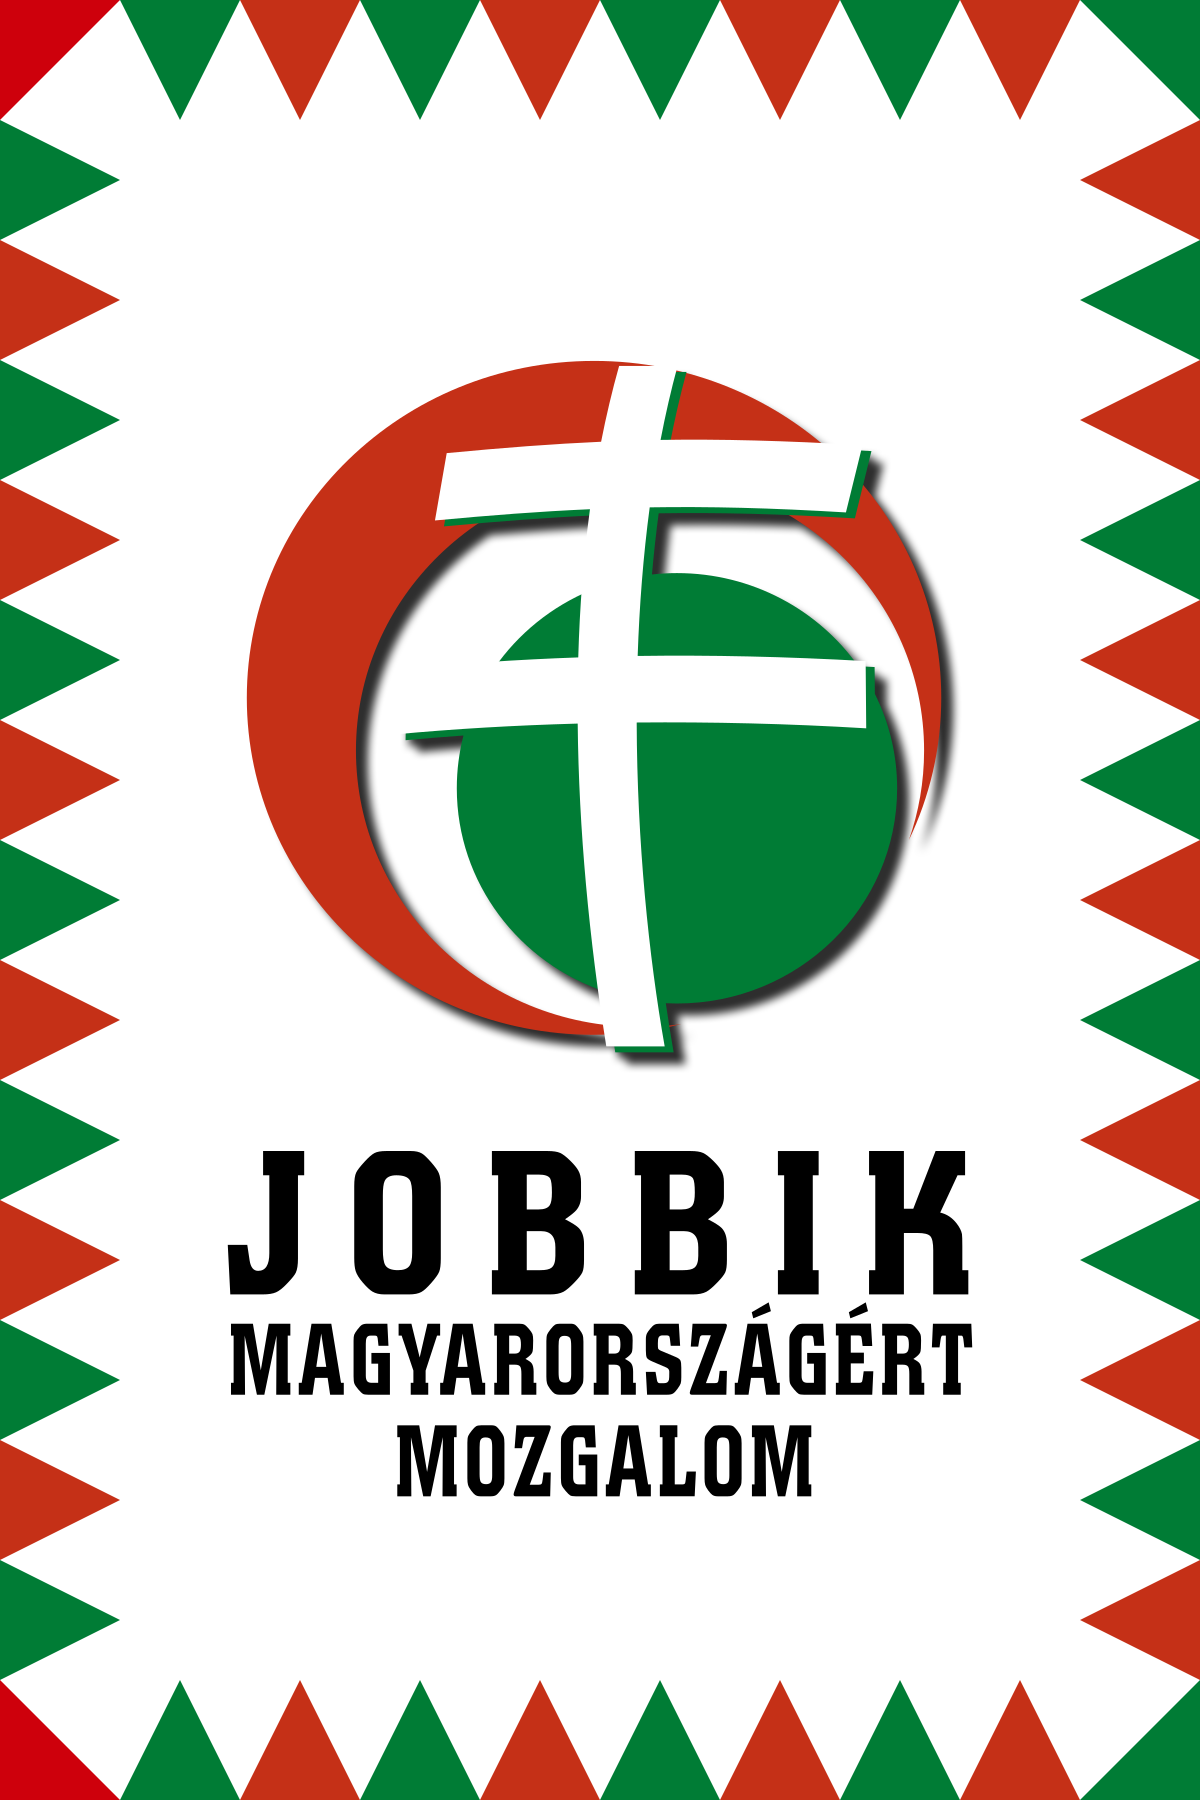 lengyel társkereső szolgáltatás szczecin oldal nő találkozása 24